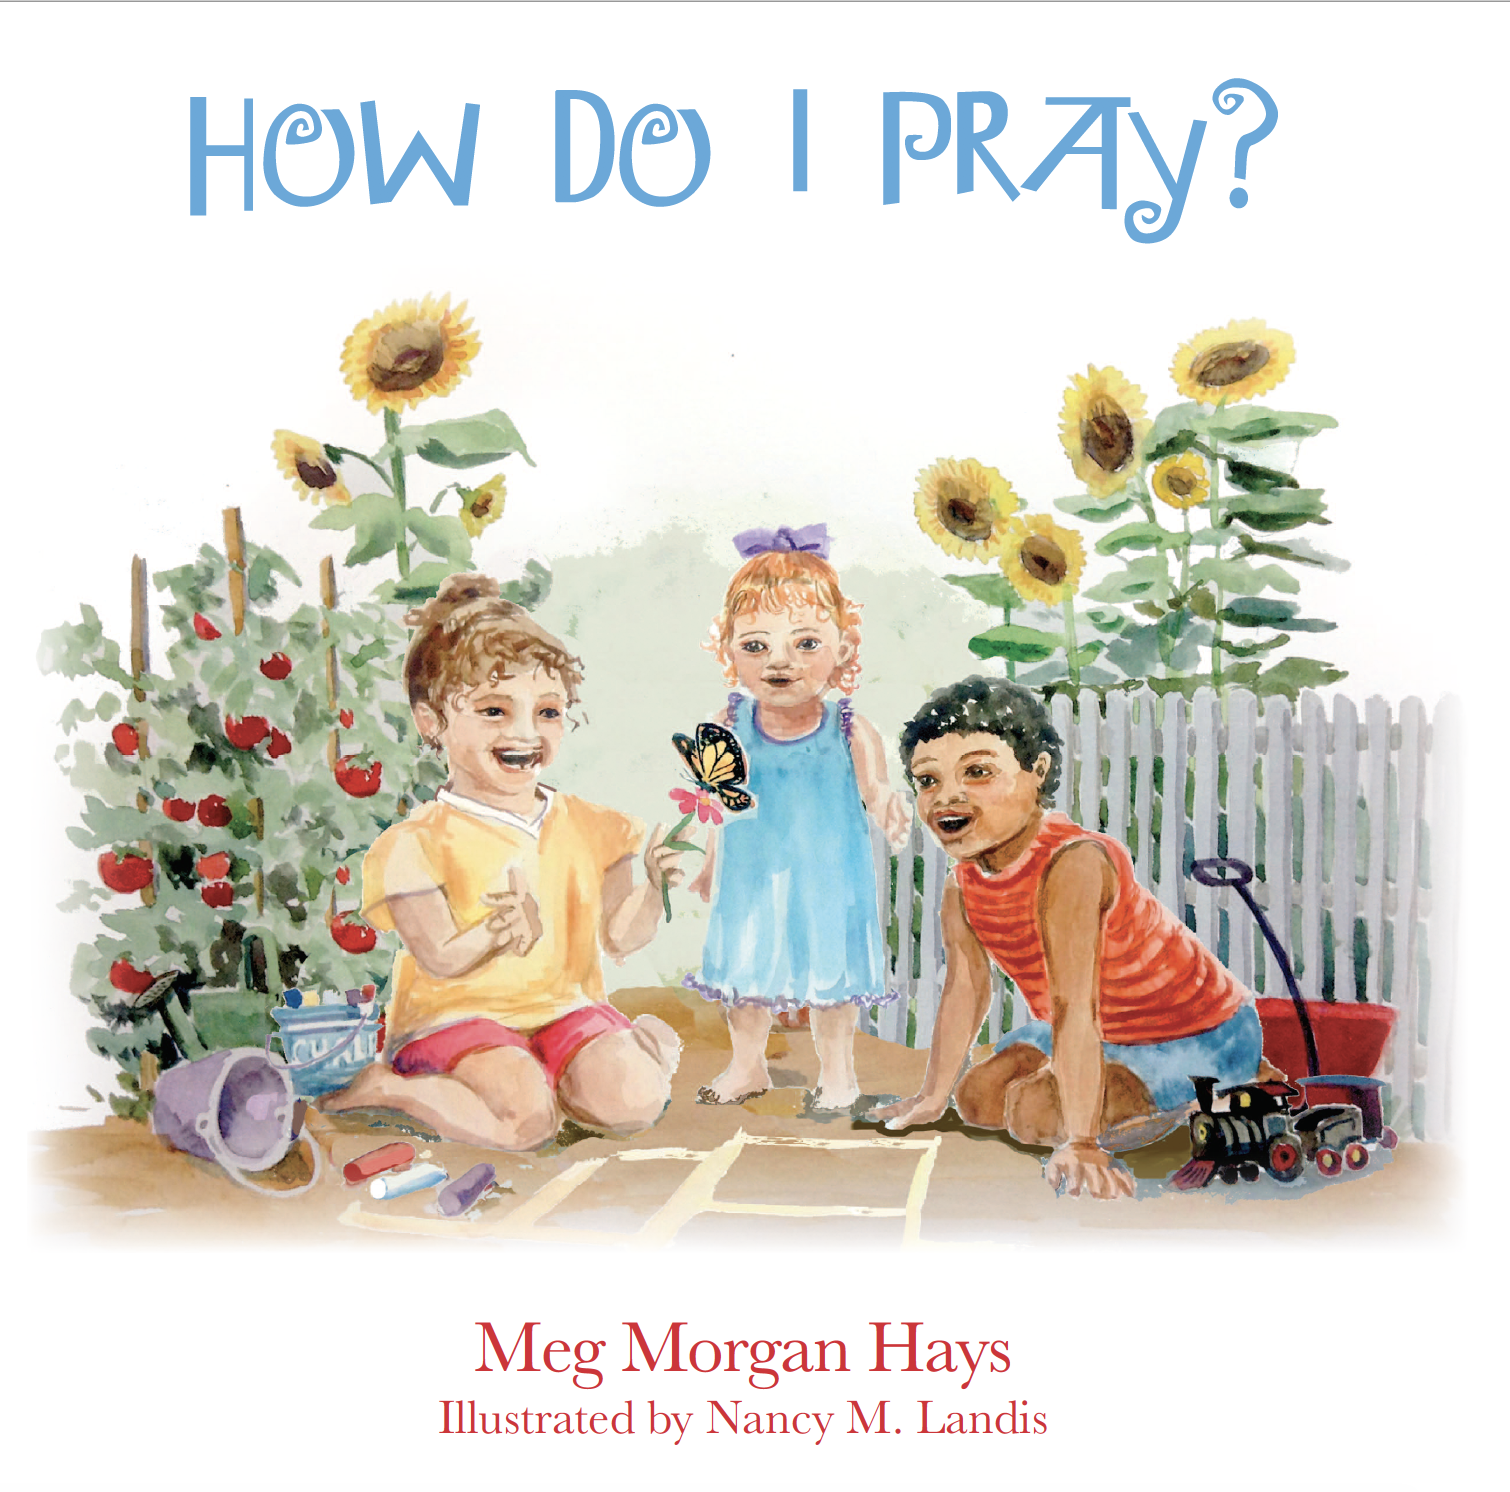 How Do I Pray? by Meg Morgan Hays